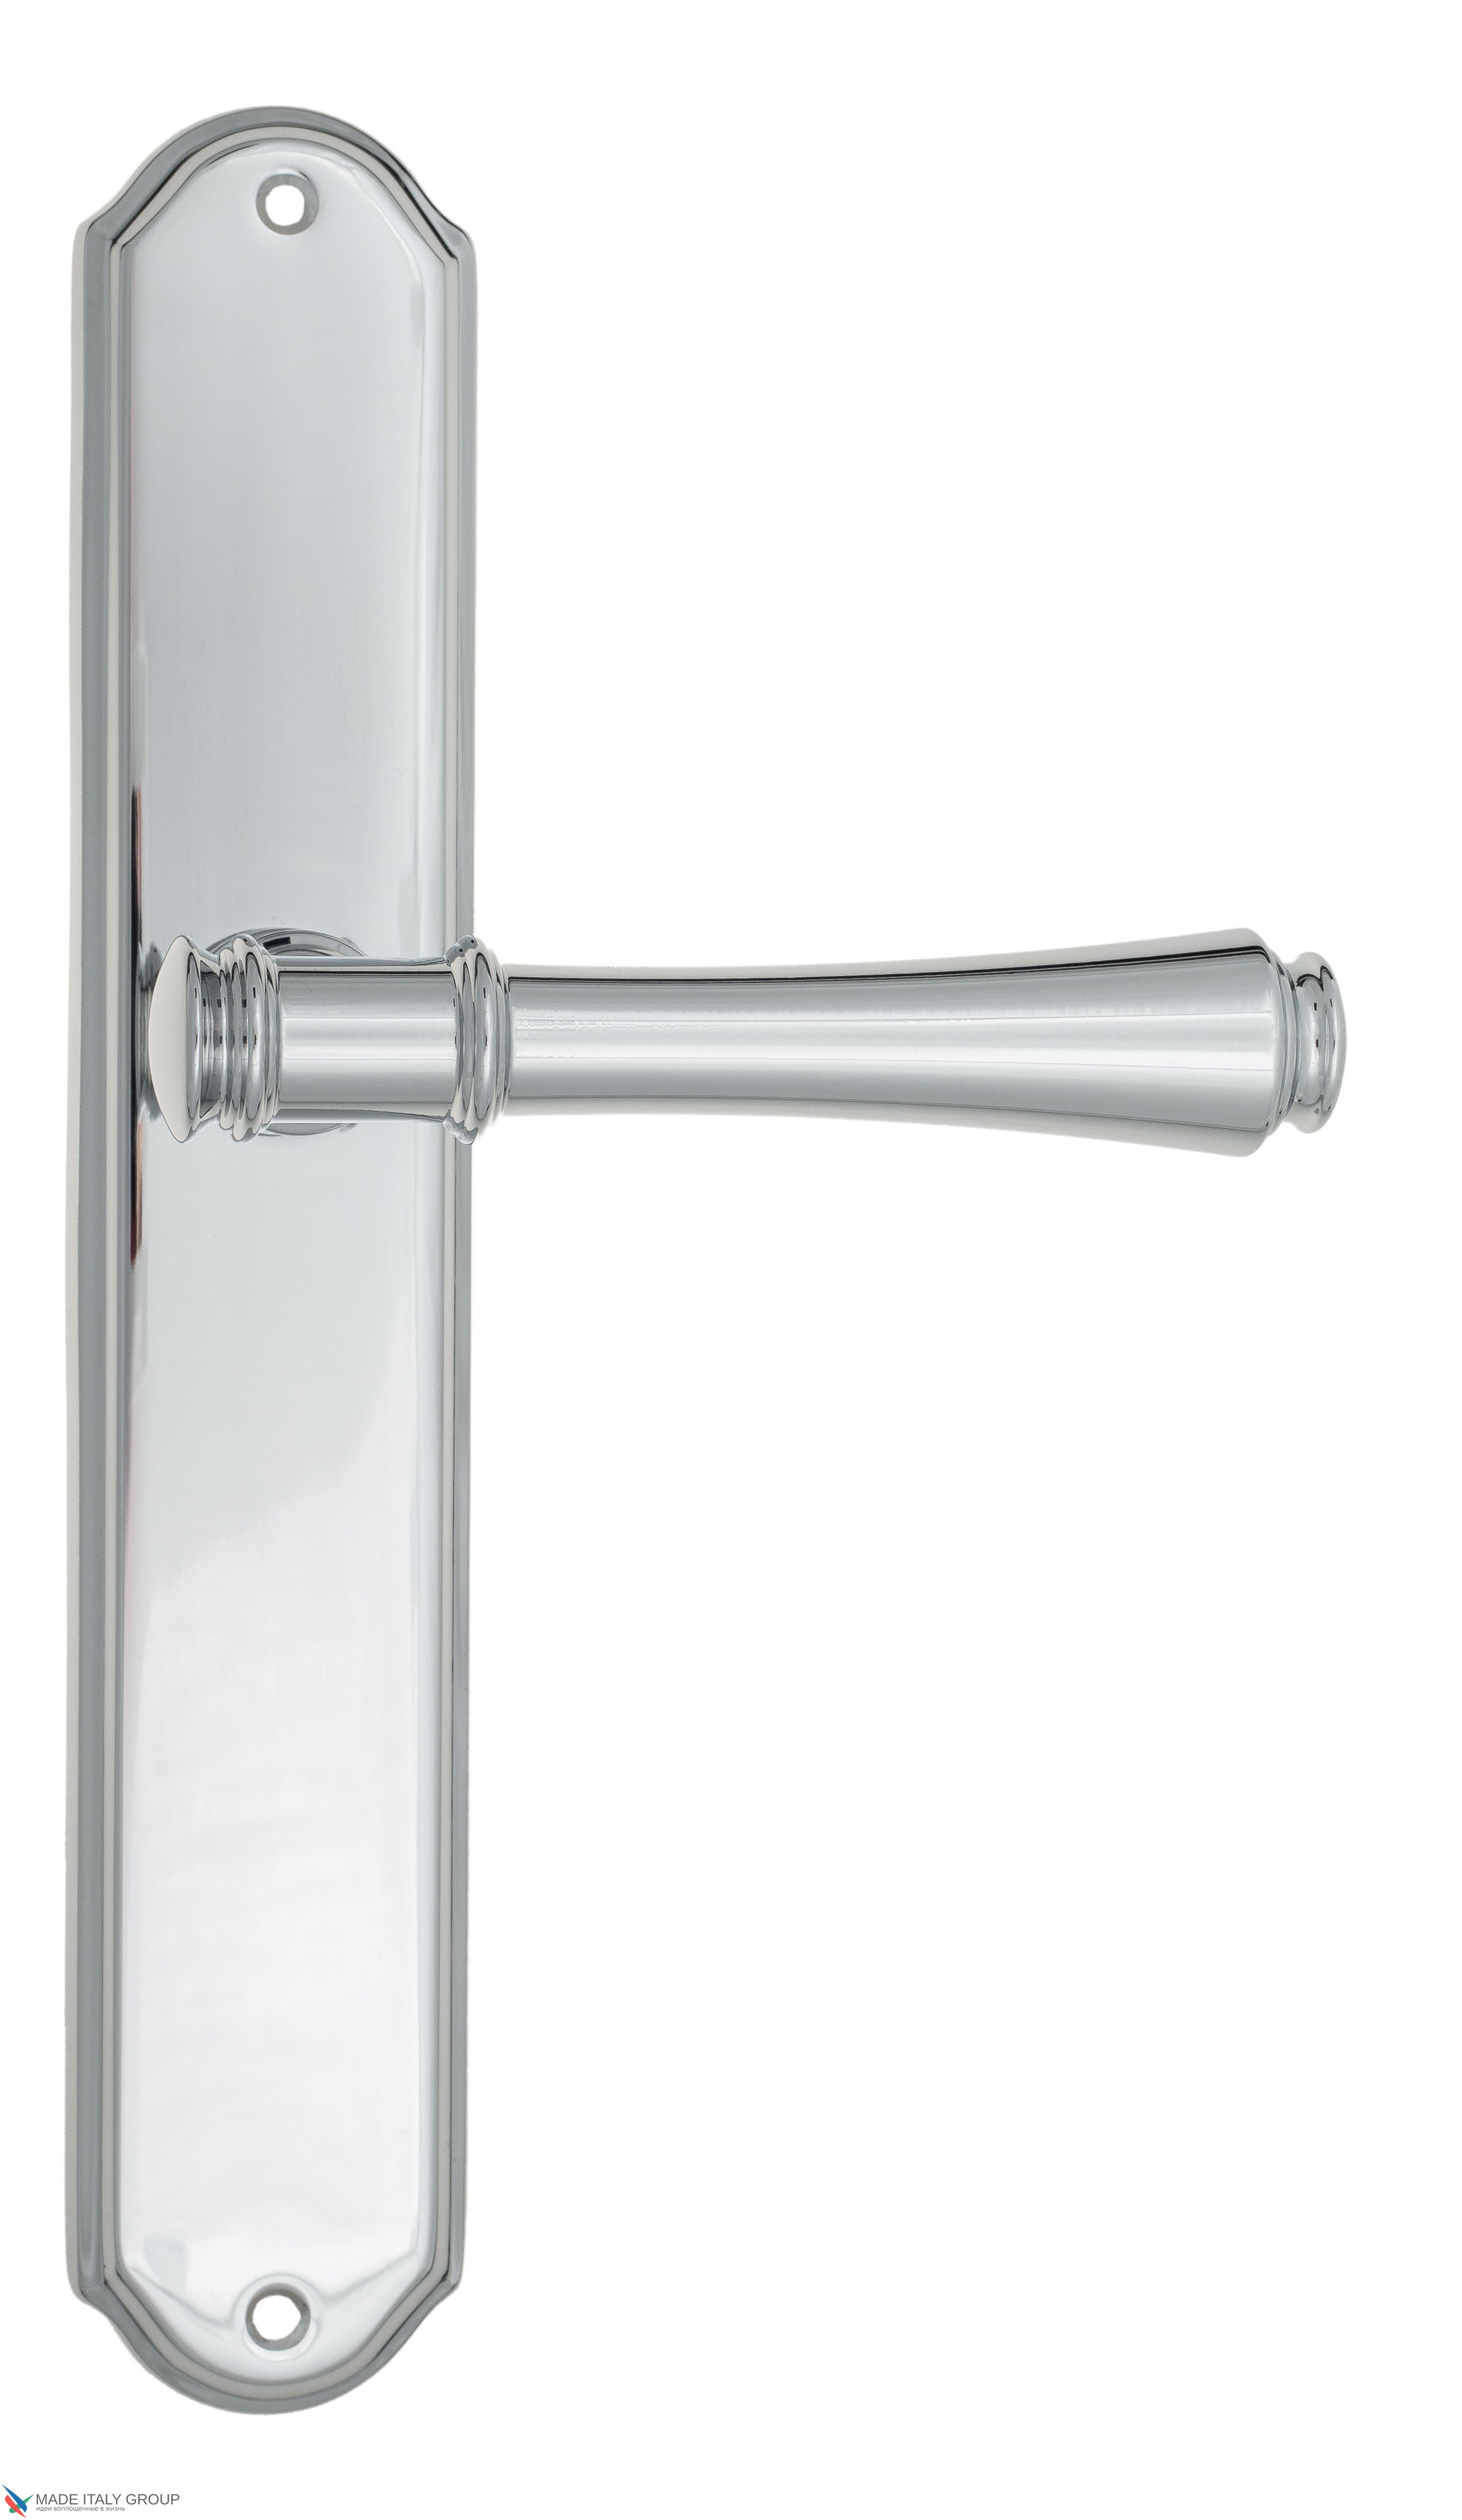 Дверная ручка Venezia "CALLISTO" на планке PL02 полированный хром